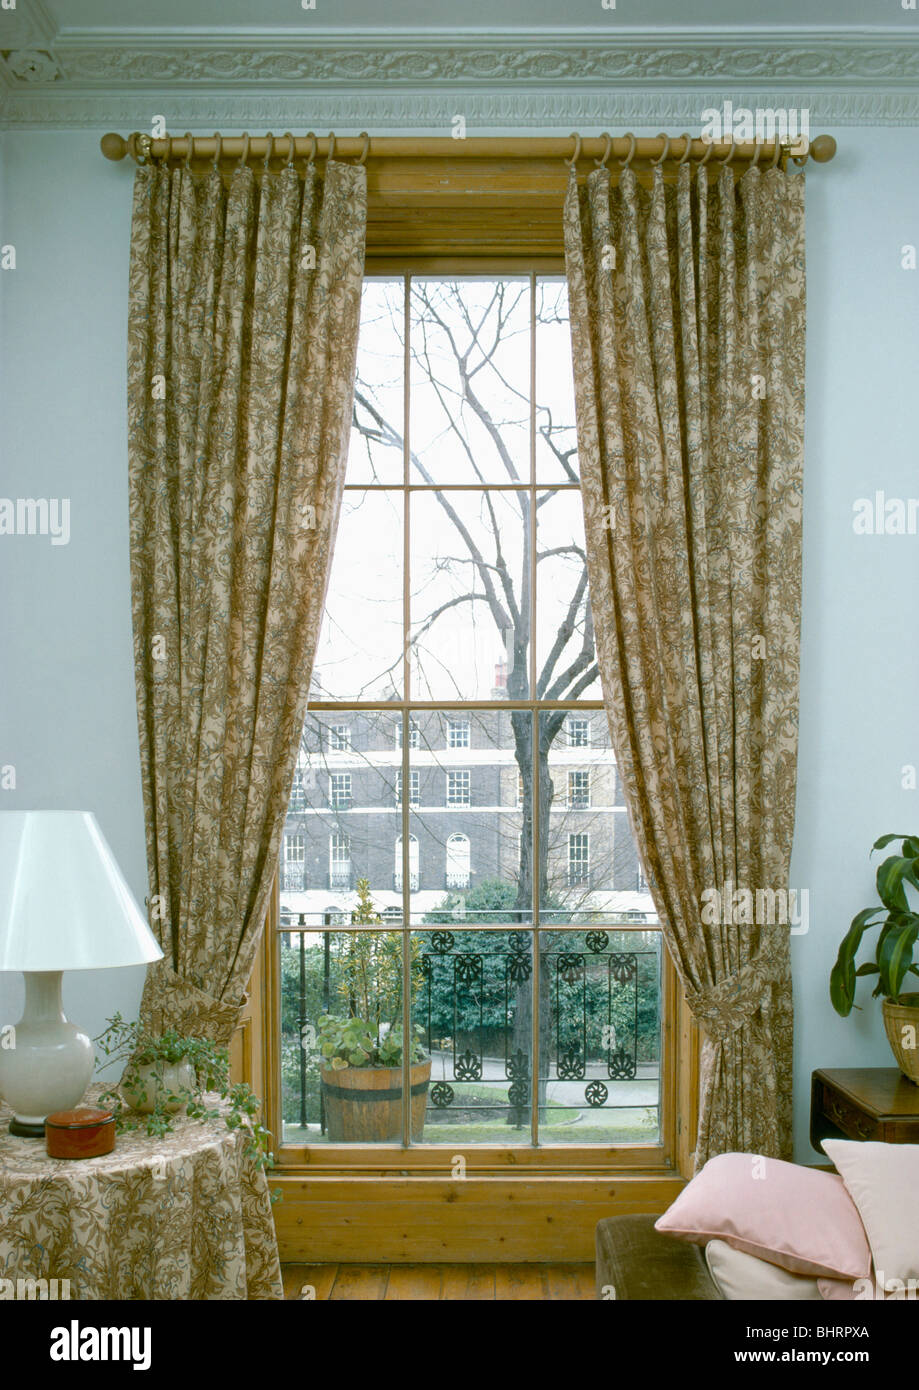 Gemusterte Gardinen an Schiebefenster mit Blick auf die Straße im  Stadthaus-Wohnzimmer Stockfotografie - Alamy